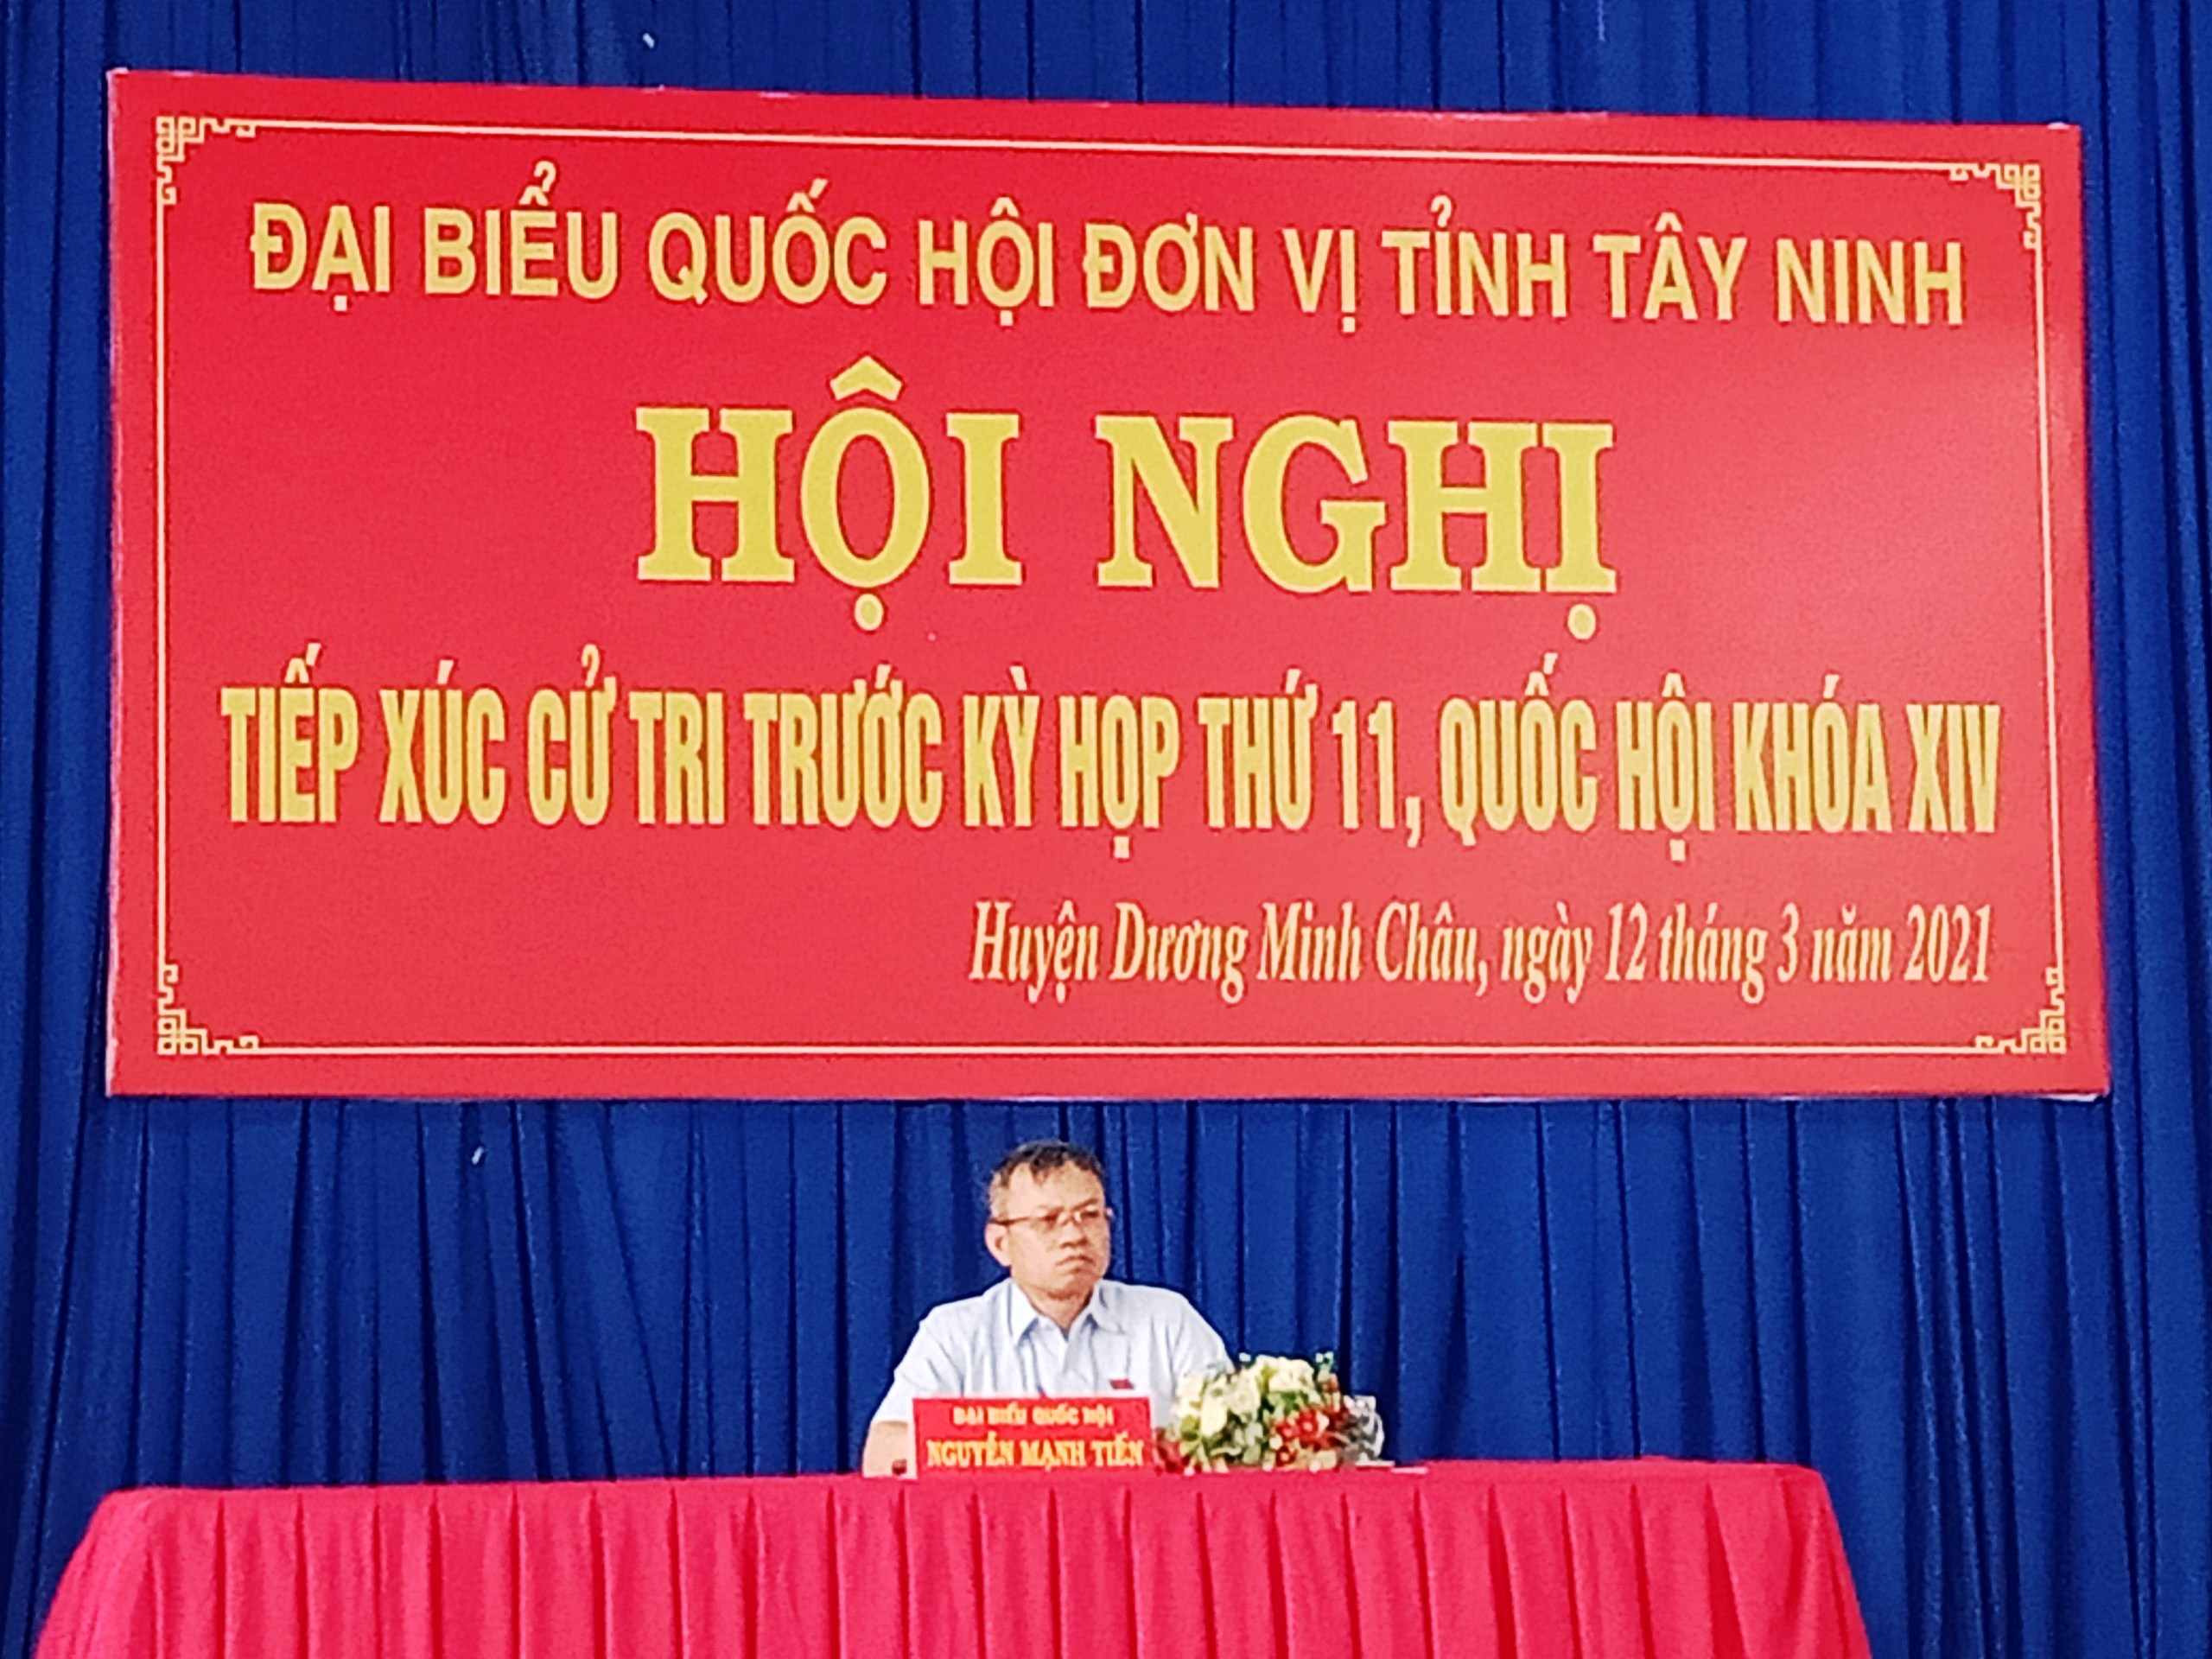 Đại biểu Quốc hội tiếp xúc với hơn 140 cử tri huyện Dương Minh Châu